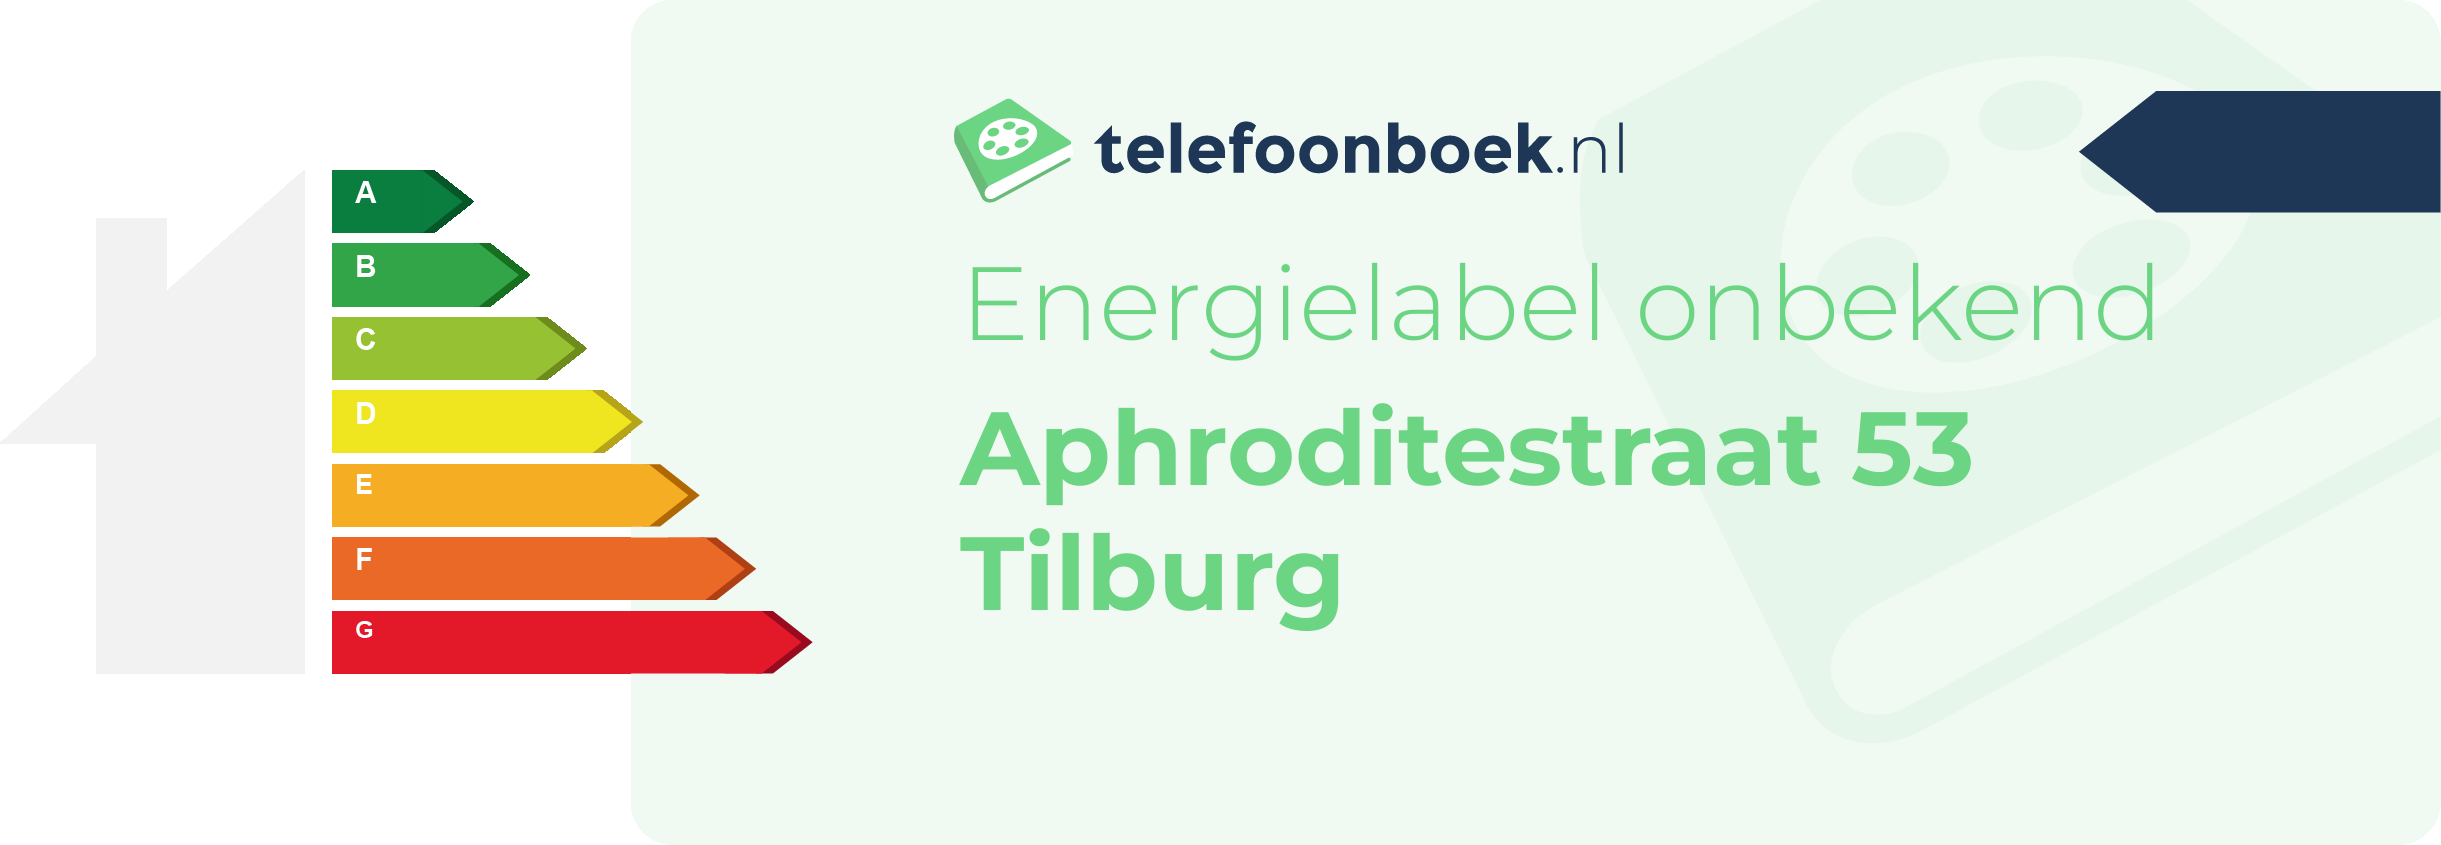 Energielabel Aphroditestraat 53 Tilburg